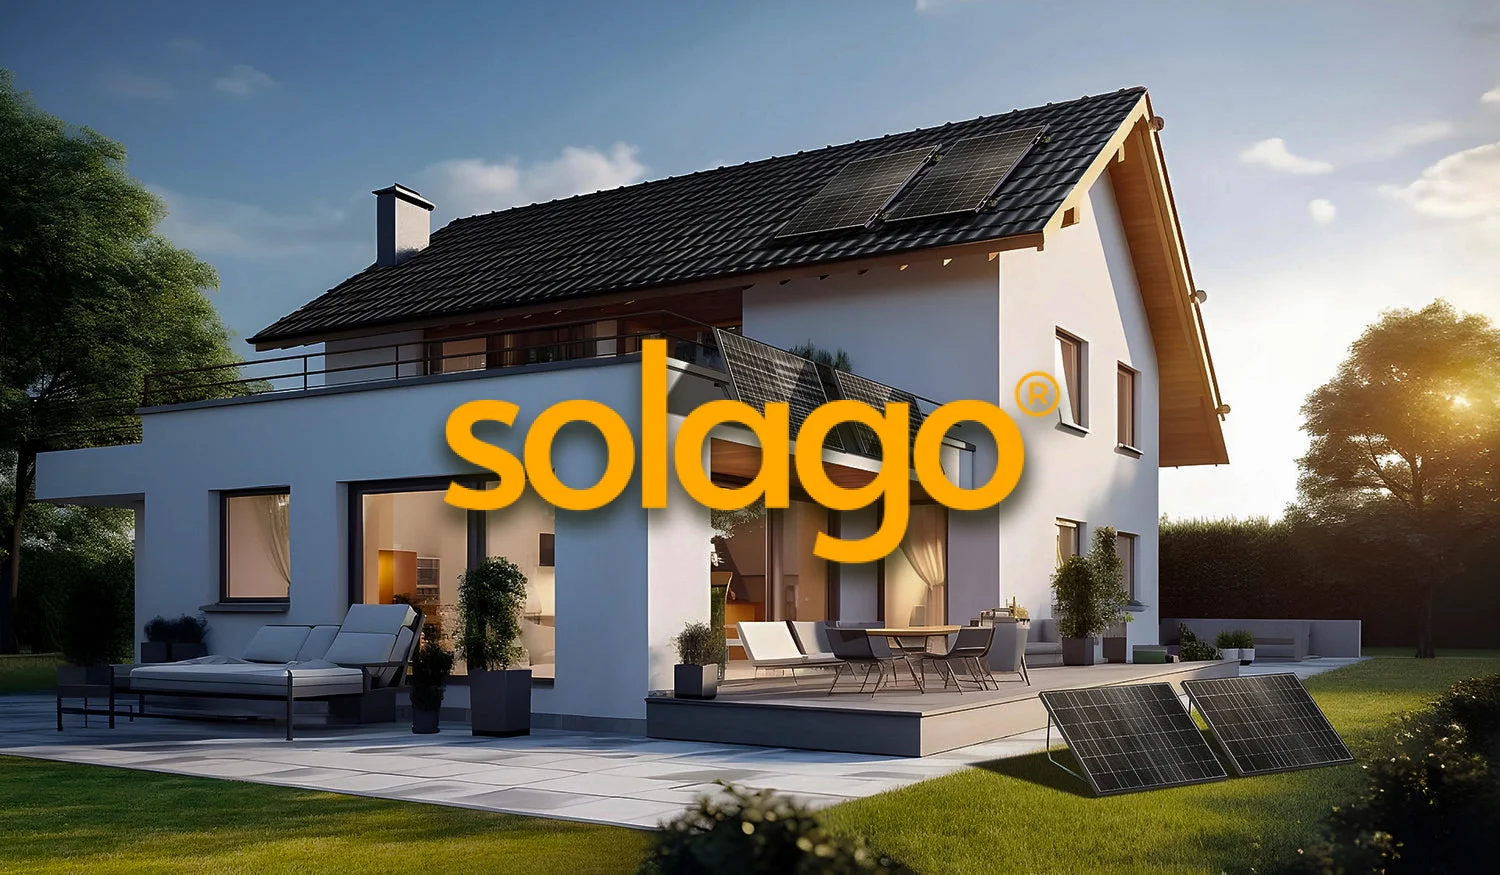 Solago GmbH - Erfahrungen mit dem Balkonkraftwerk Anbieter